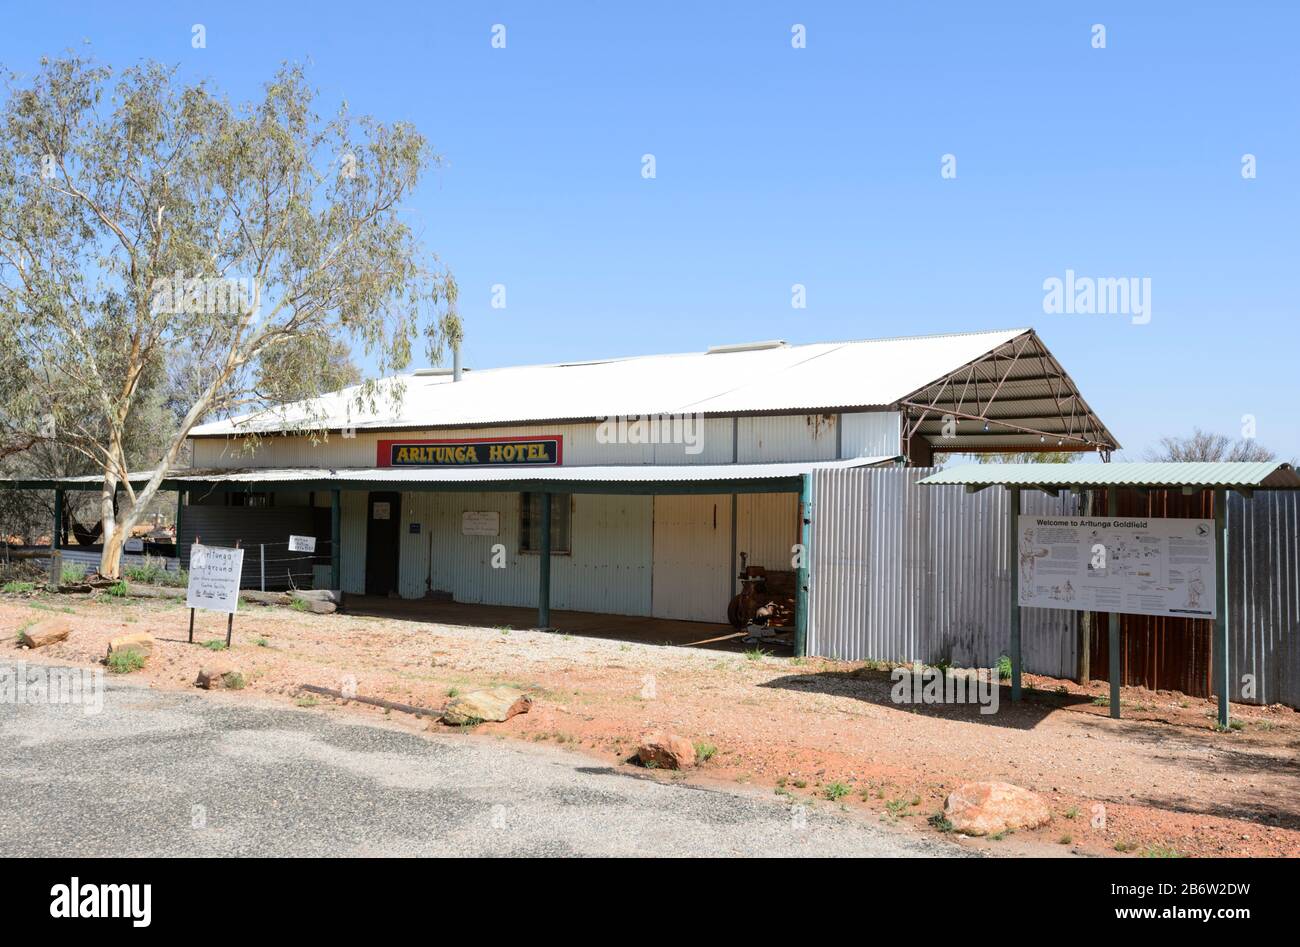 Arltunga Hotel, ein abgelegener Pub im Outback in der verlassenen Geisterstadt Arltunga, in der Nähe von Alice Springs, Northern Territory, NT, Australien Stockfoto